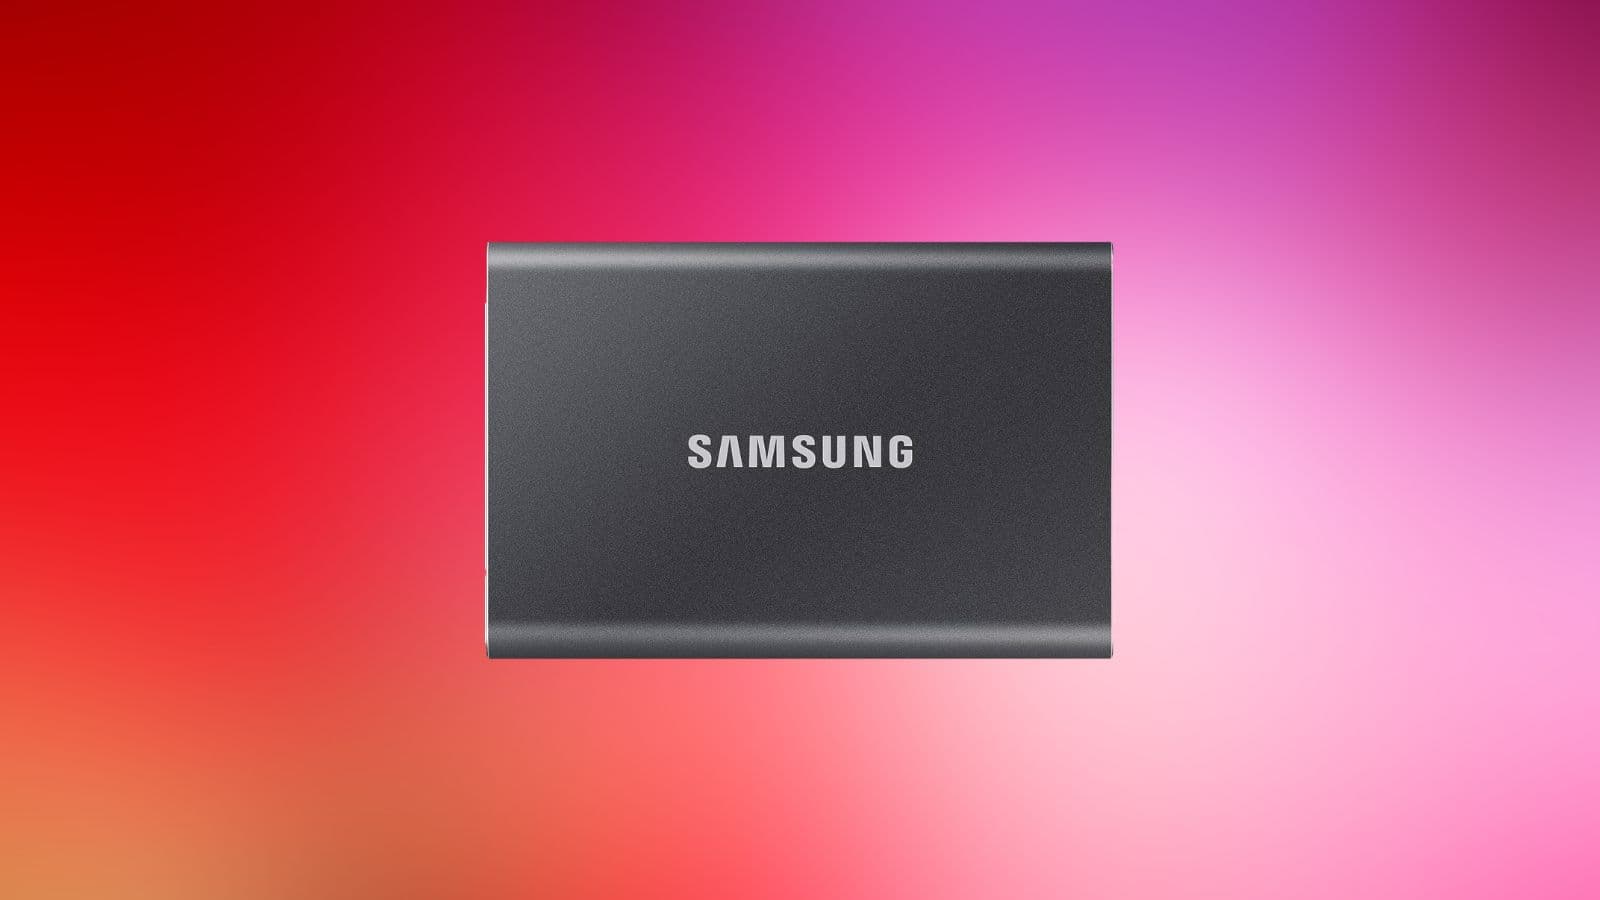 Vente flash  : la réduction folle sur ce disque dur externe Samsung  crée l'événement